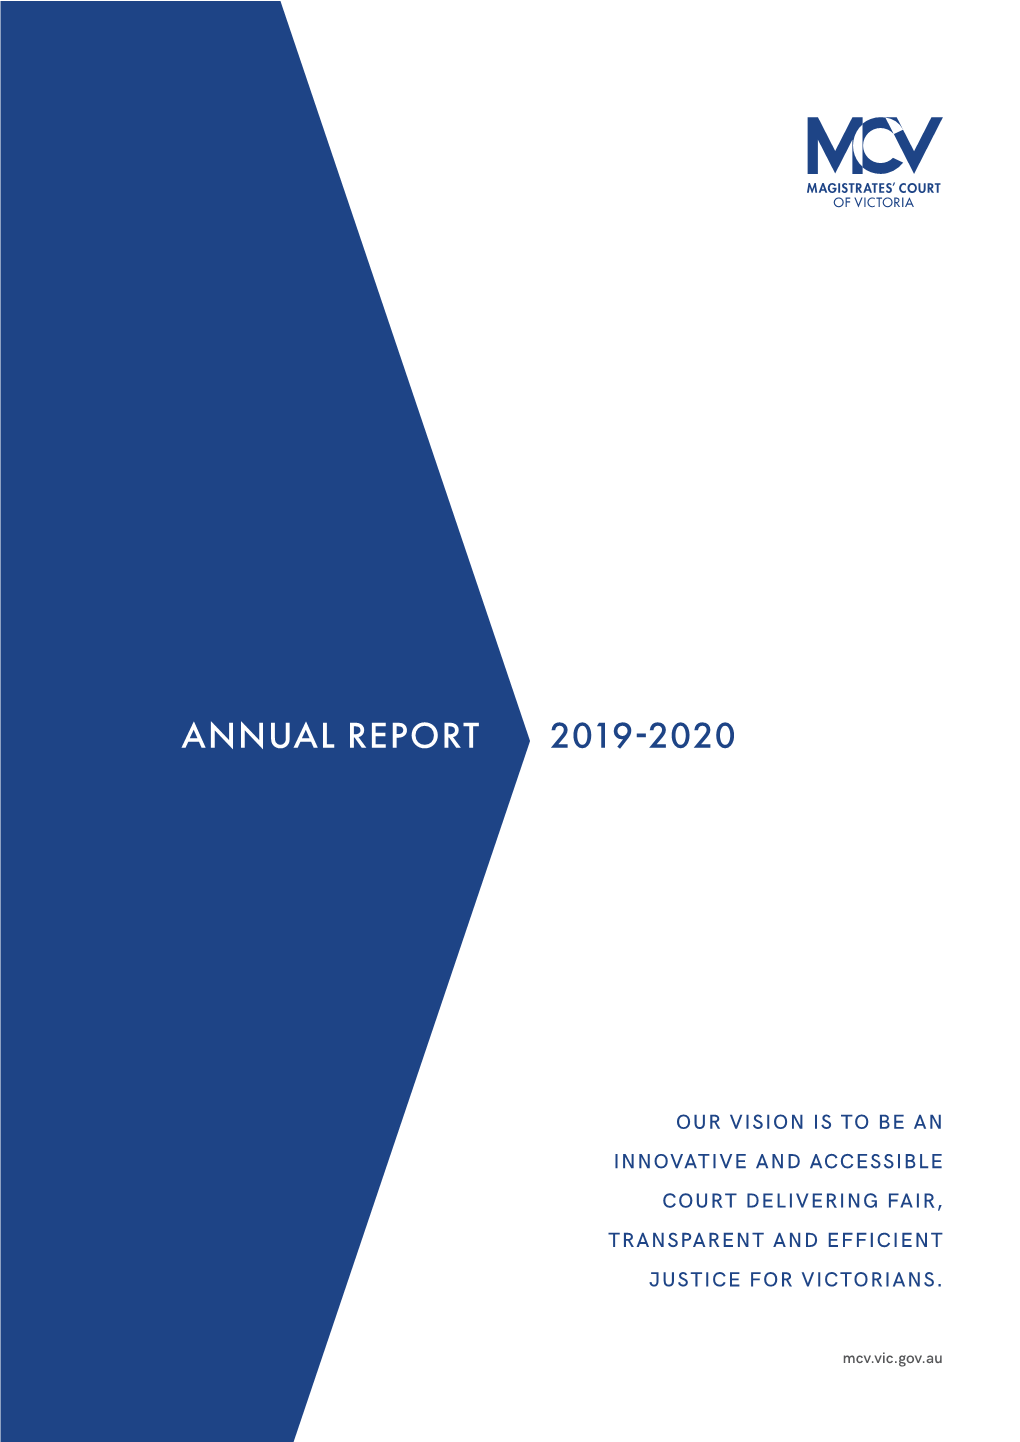 Annual Report 19-20.Pdf (1.78